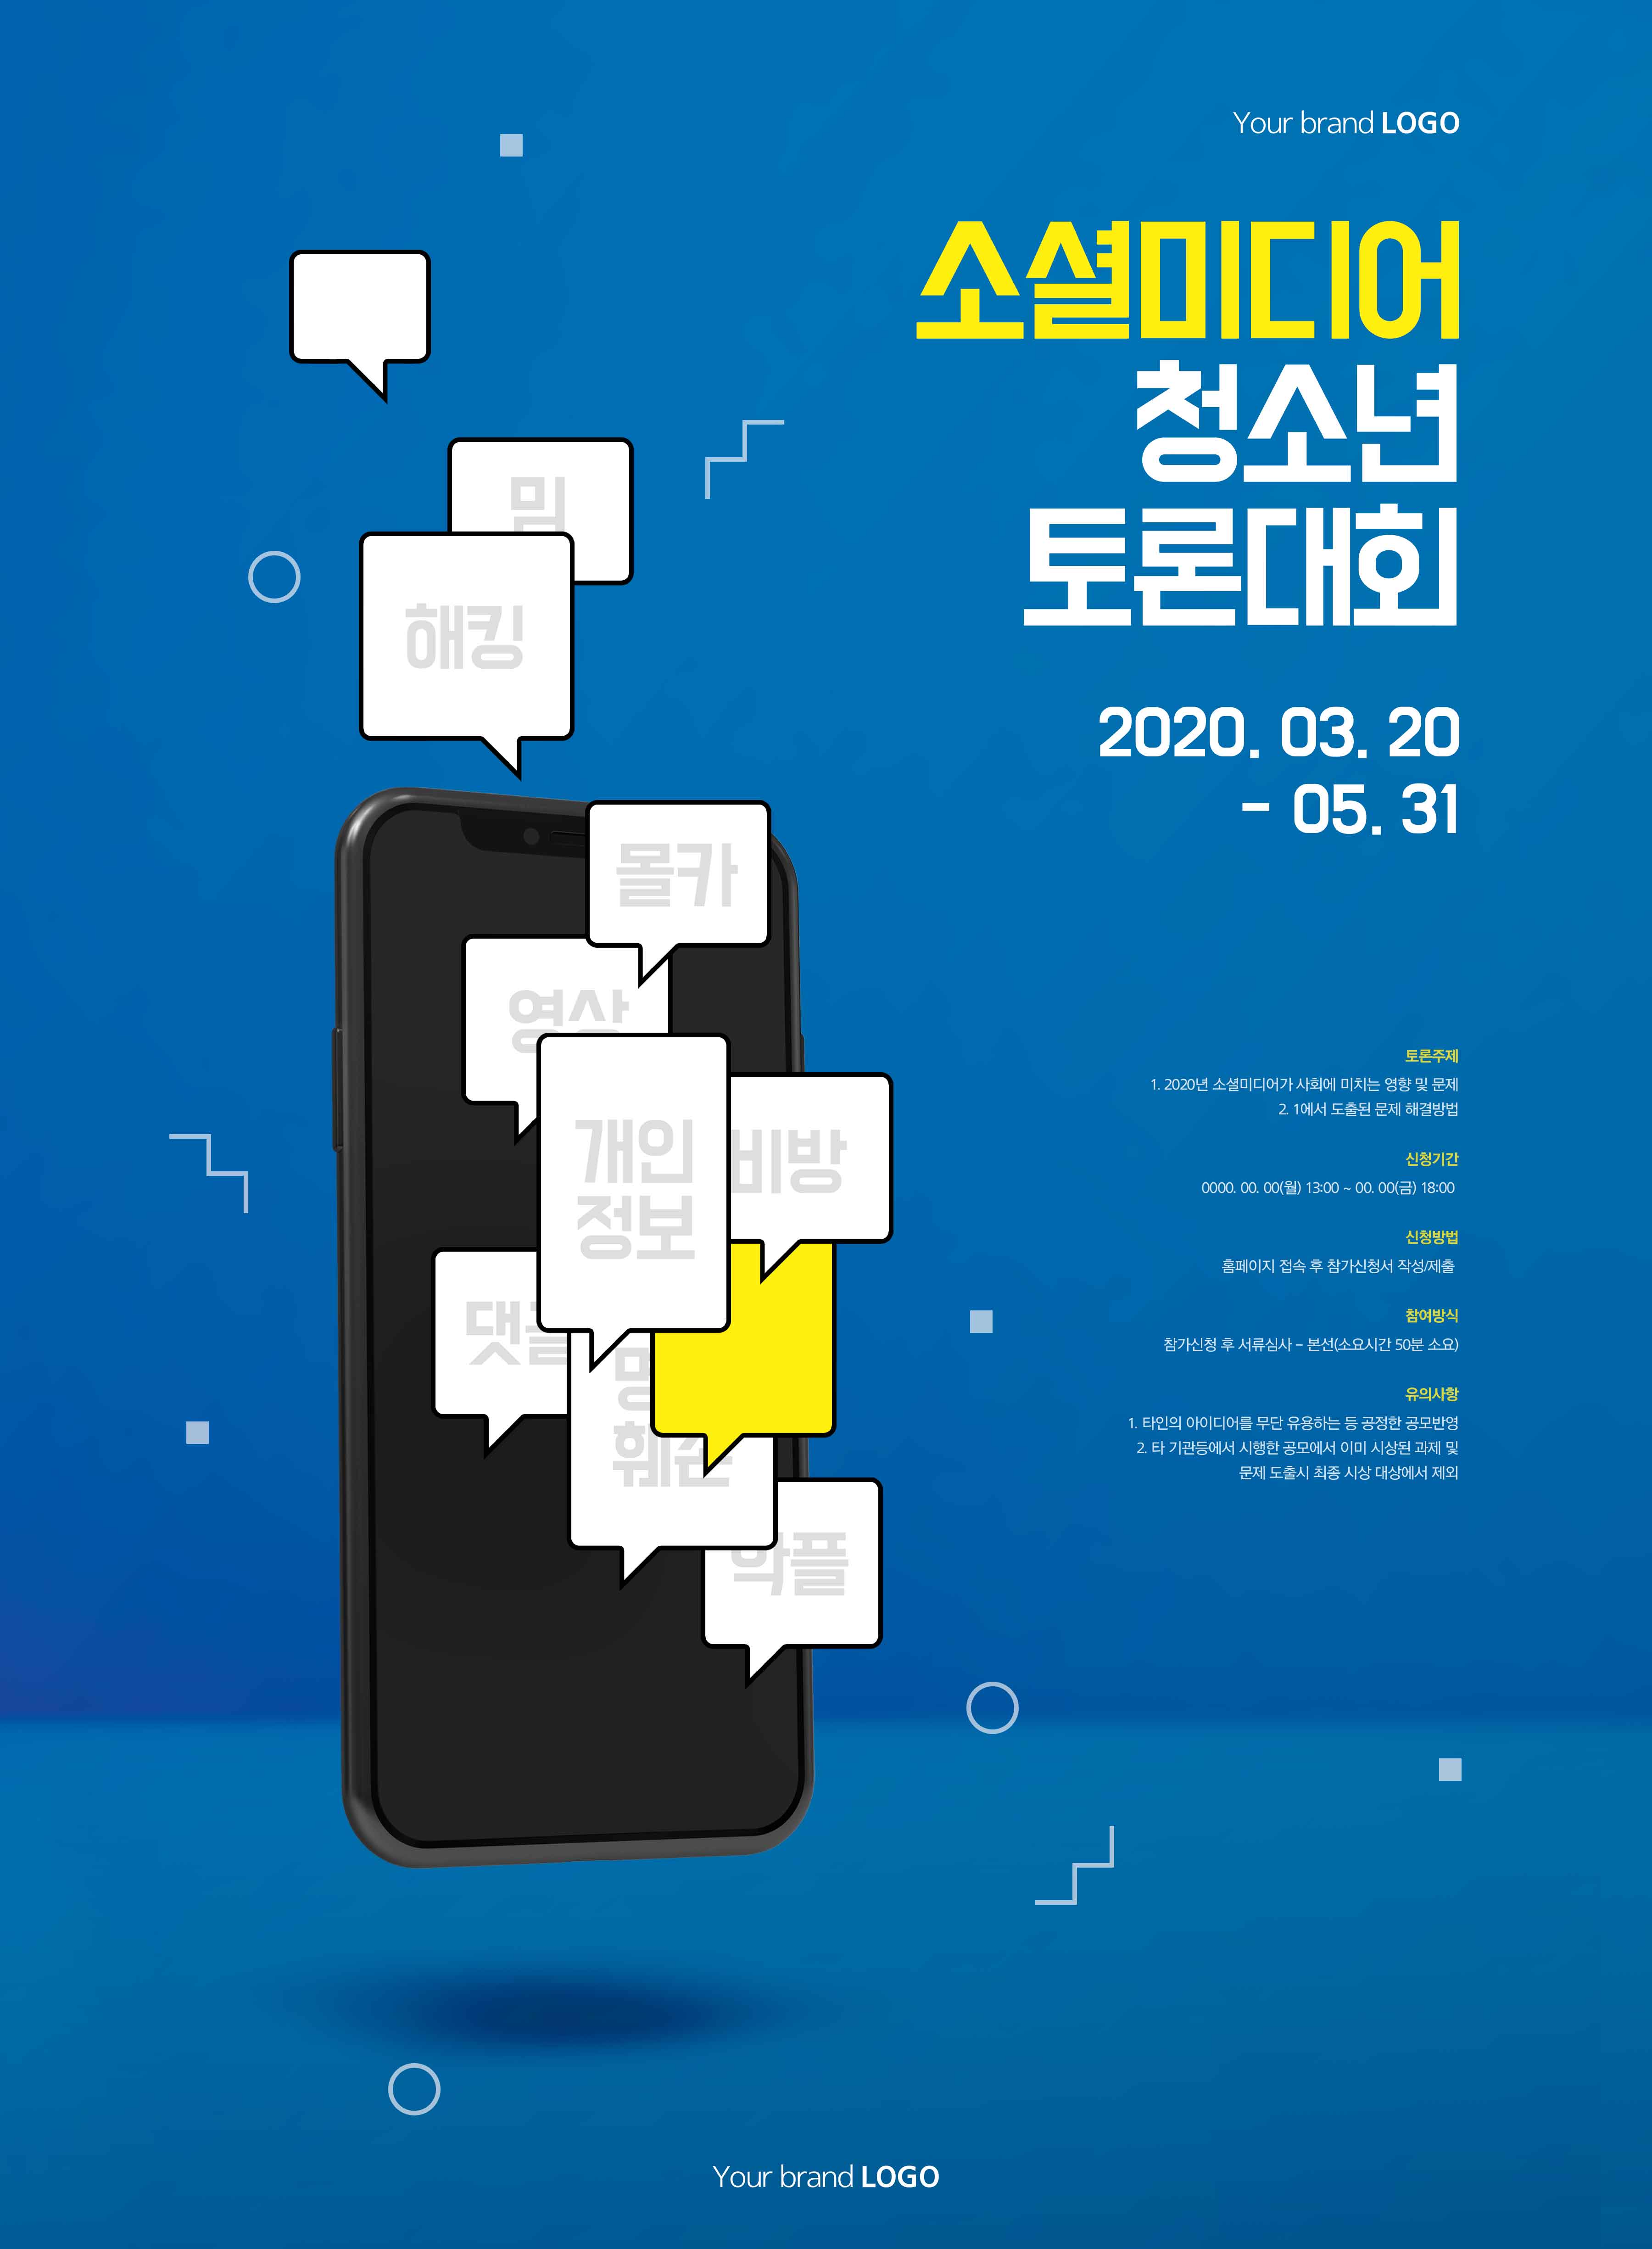 社交辩论比赛活动宣传海报PSD素材蚂蚁素材精选韩国素材插图